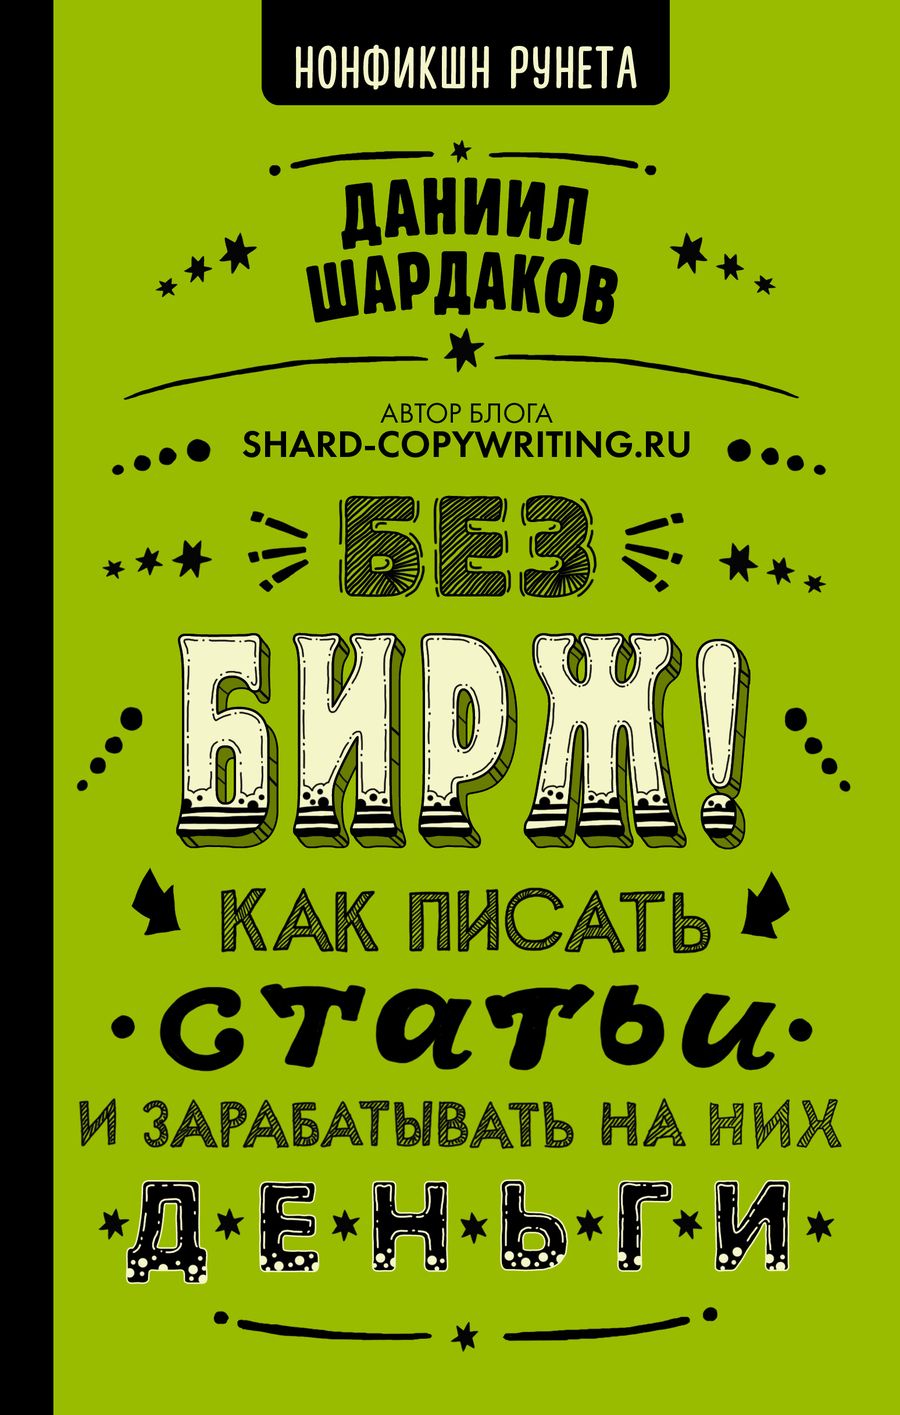 Обложка книги "Даниил Шардаков: Без бирж! Как писать статьи и зарабатывать на них деньги"